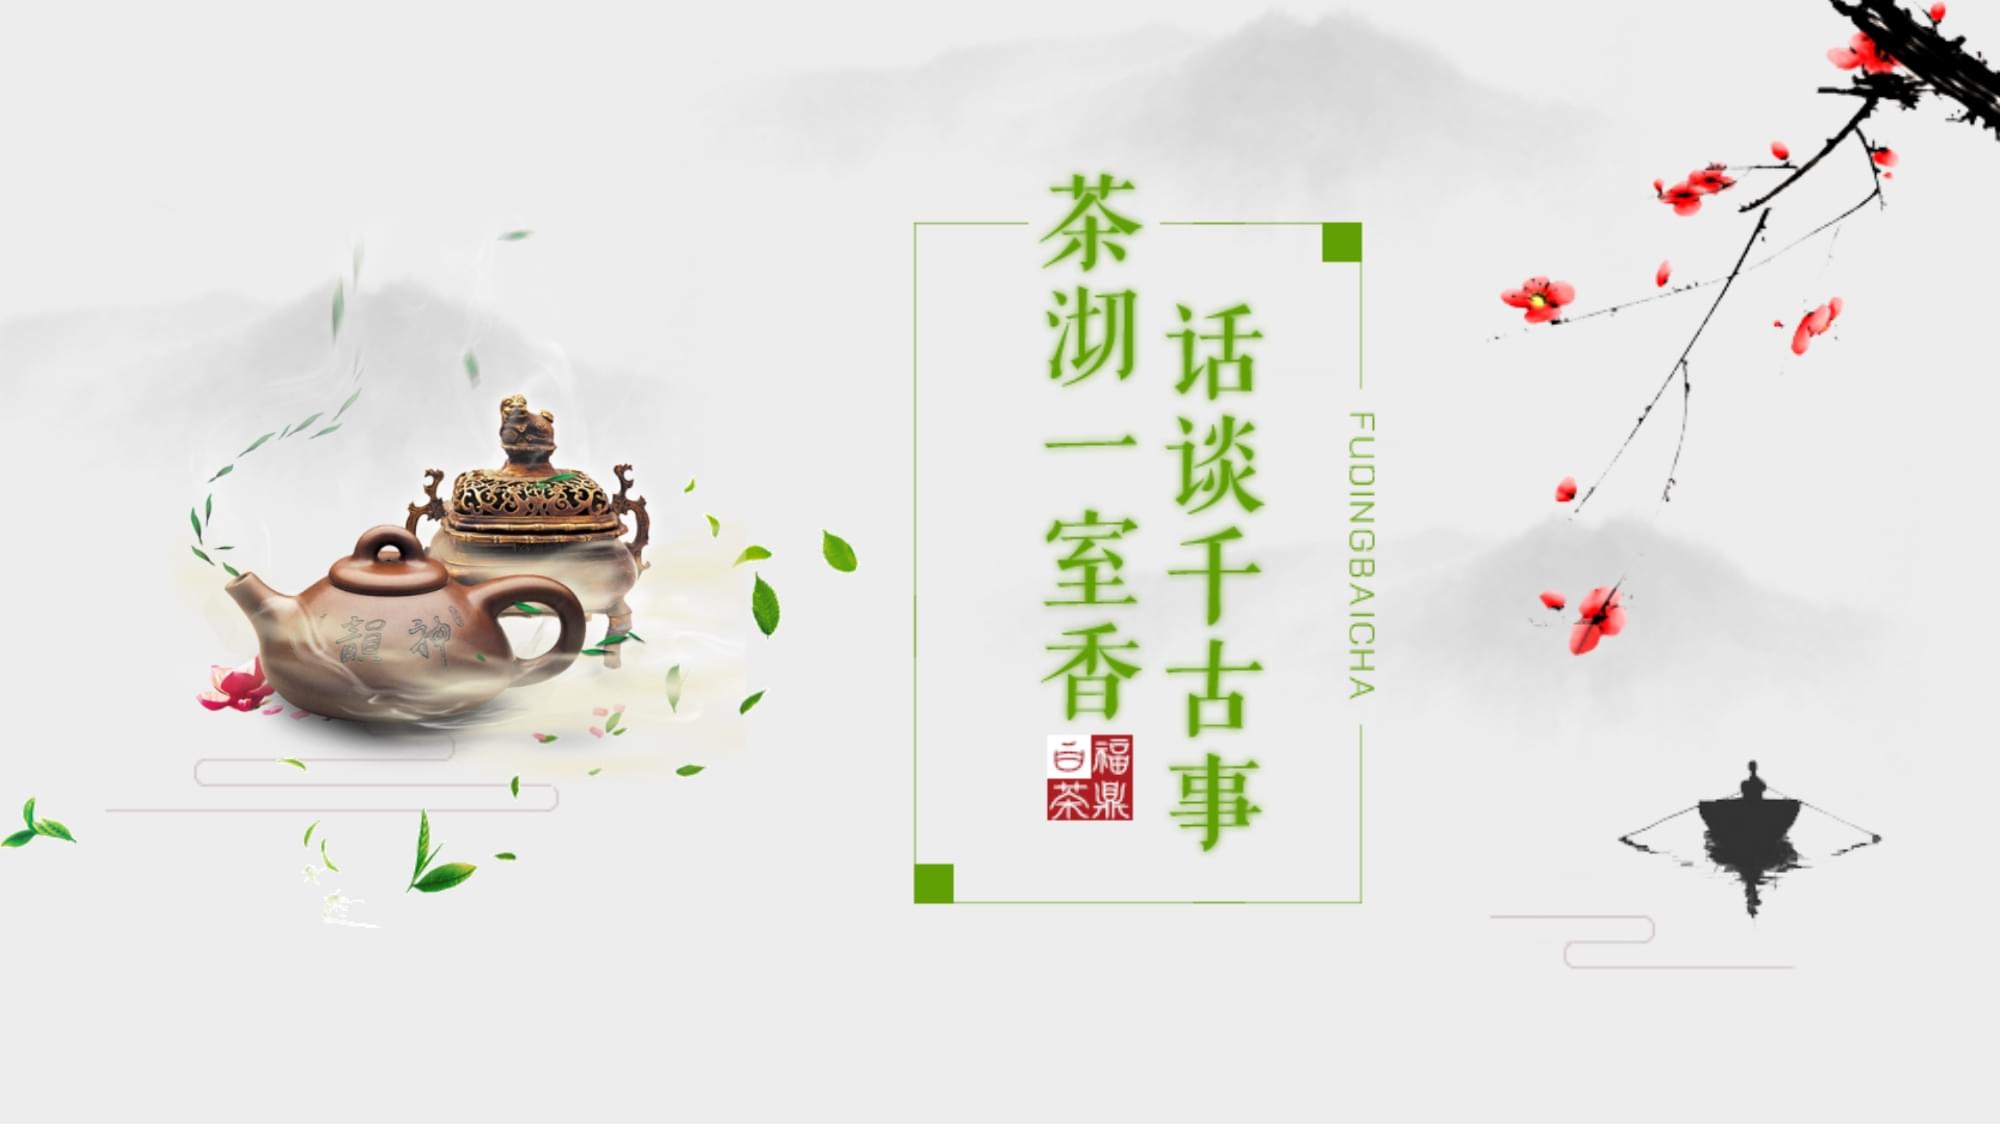 中国茶文化ppt免费下载 茶文化ppt免费下载